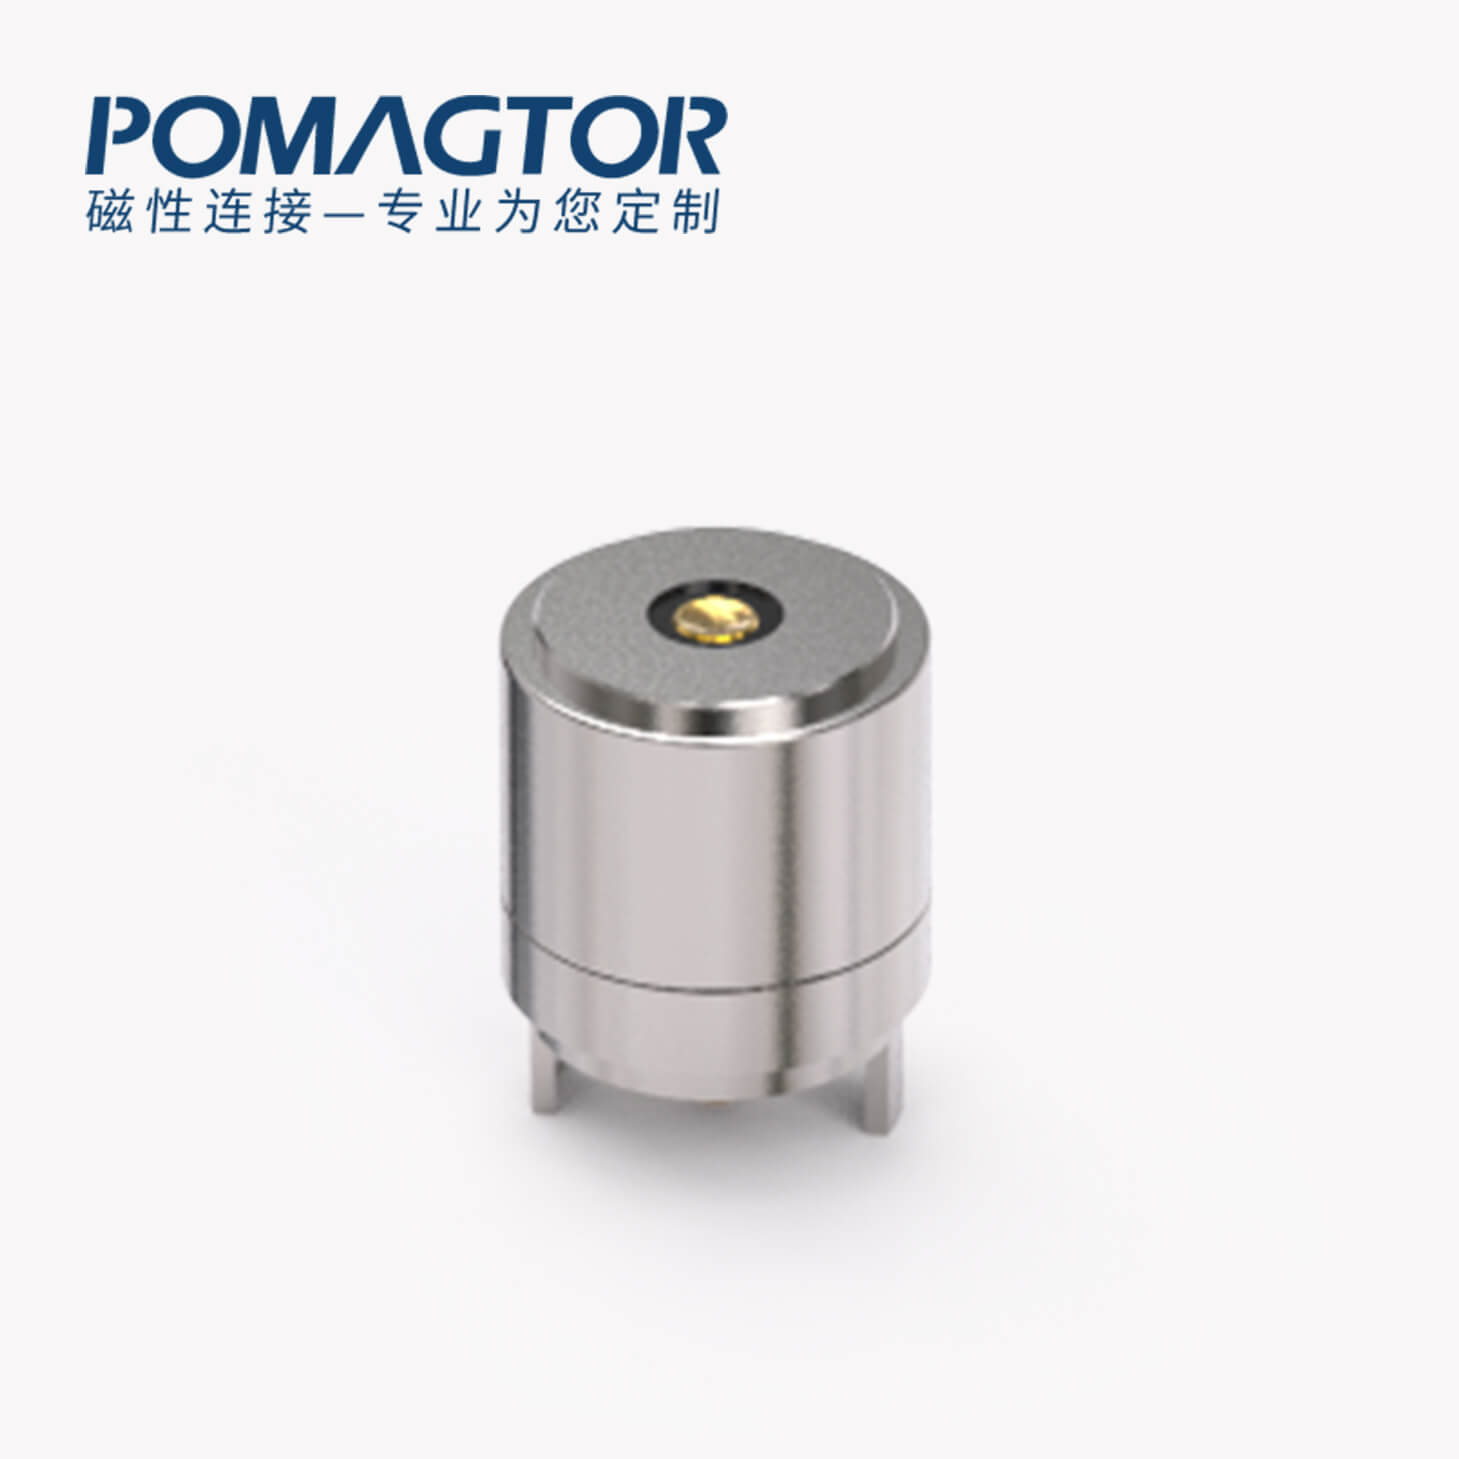 磁吸连接器 圆形磁性系列：2PIN，电镀黄铜Au3u，电压5V，电流1.5A，工作行程0.8mm:60gfMax，弹力10000次+，工作温度-30°~85°